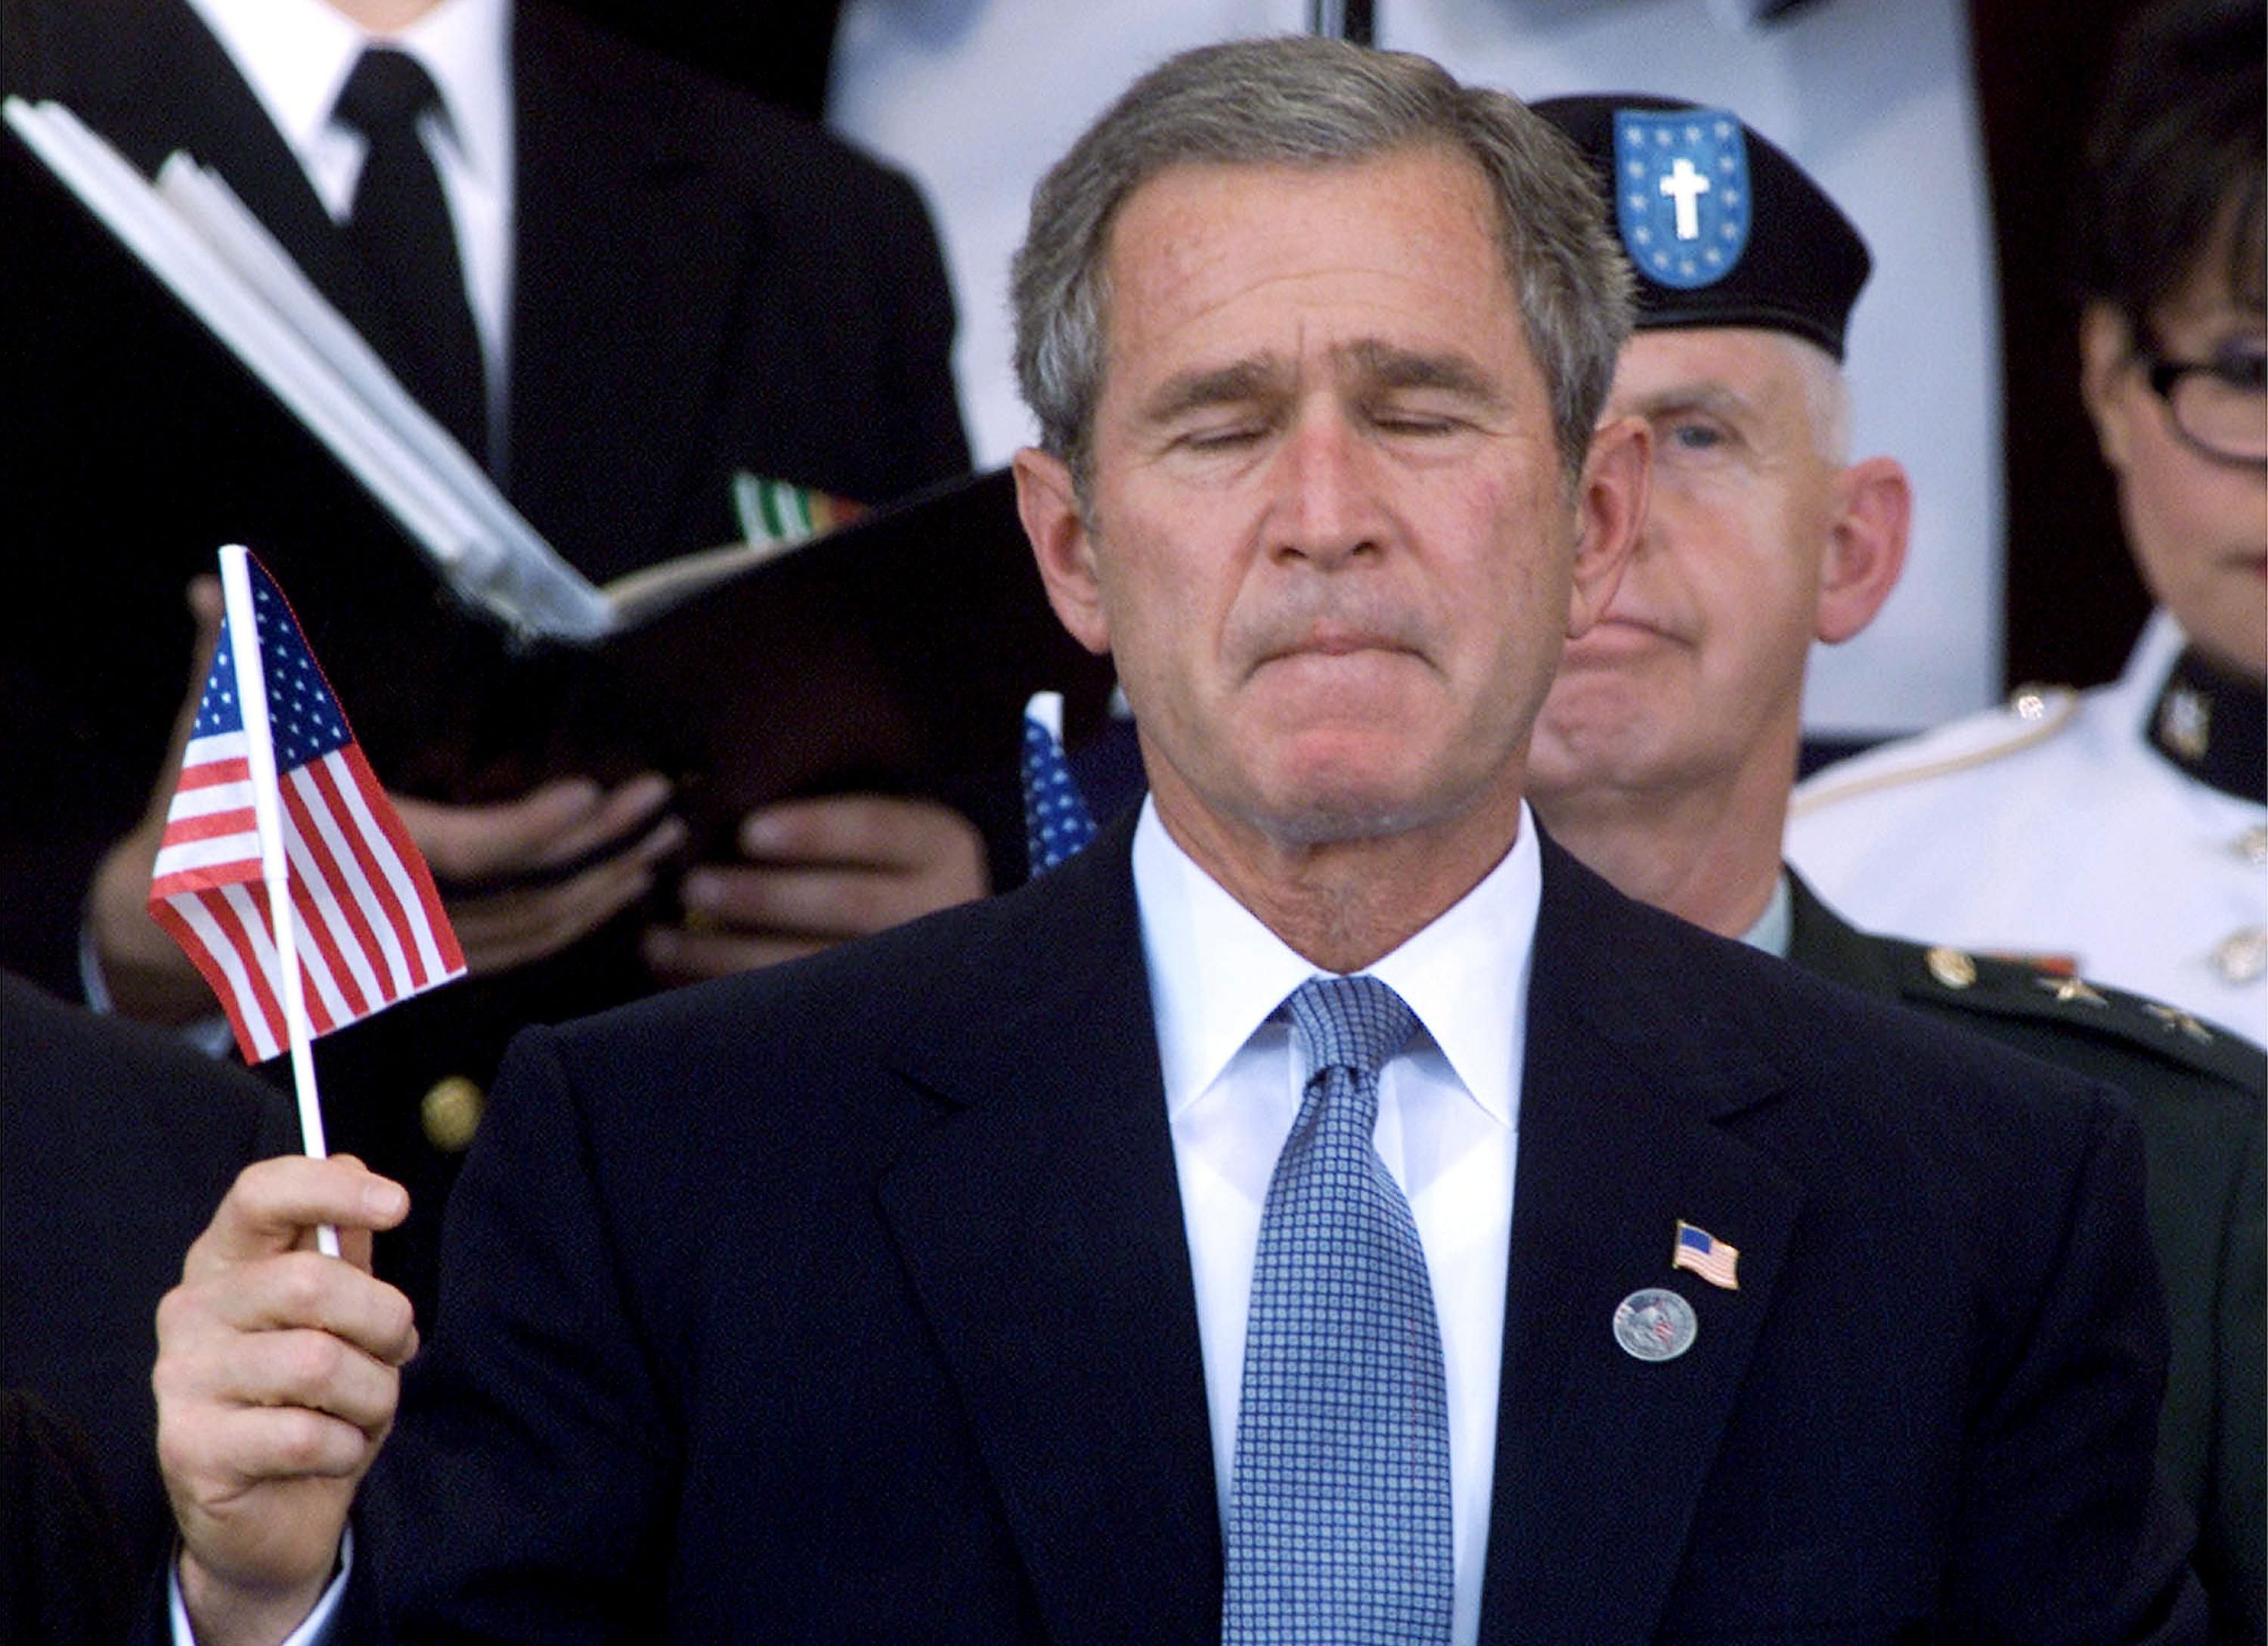 George W. Bush at 9/11 memorial